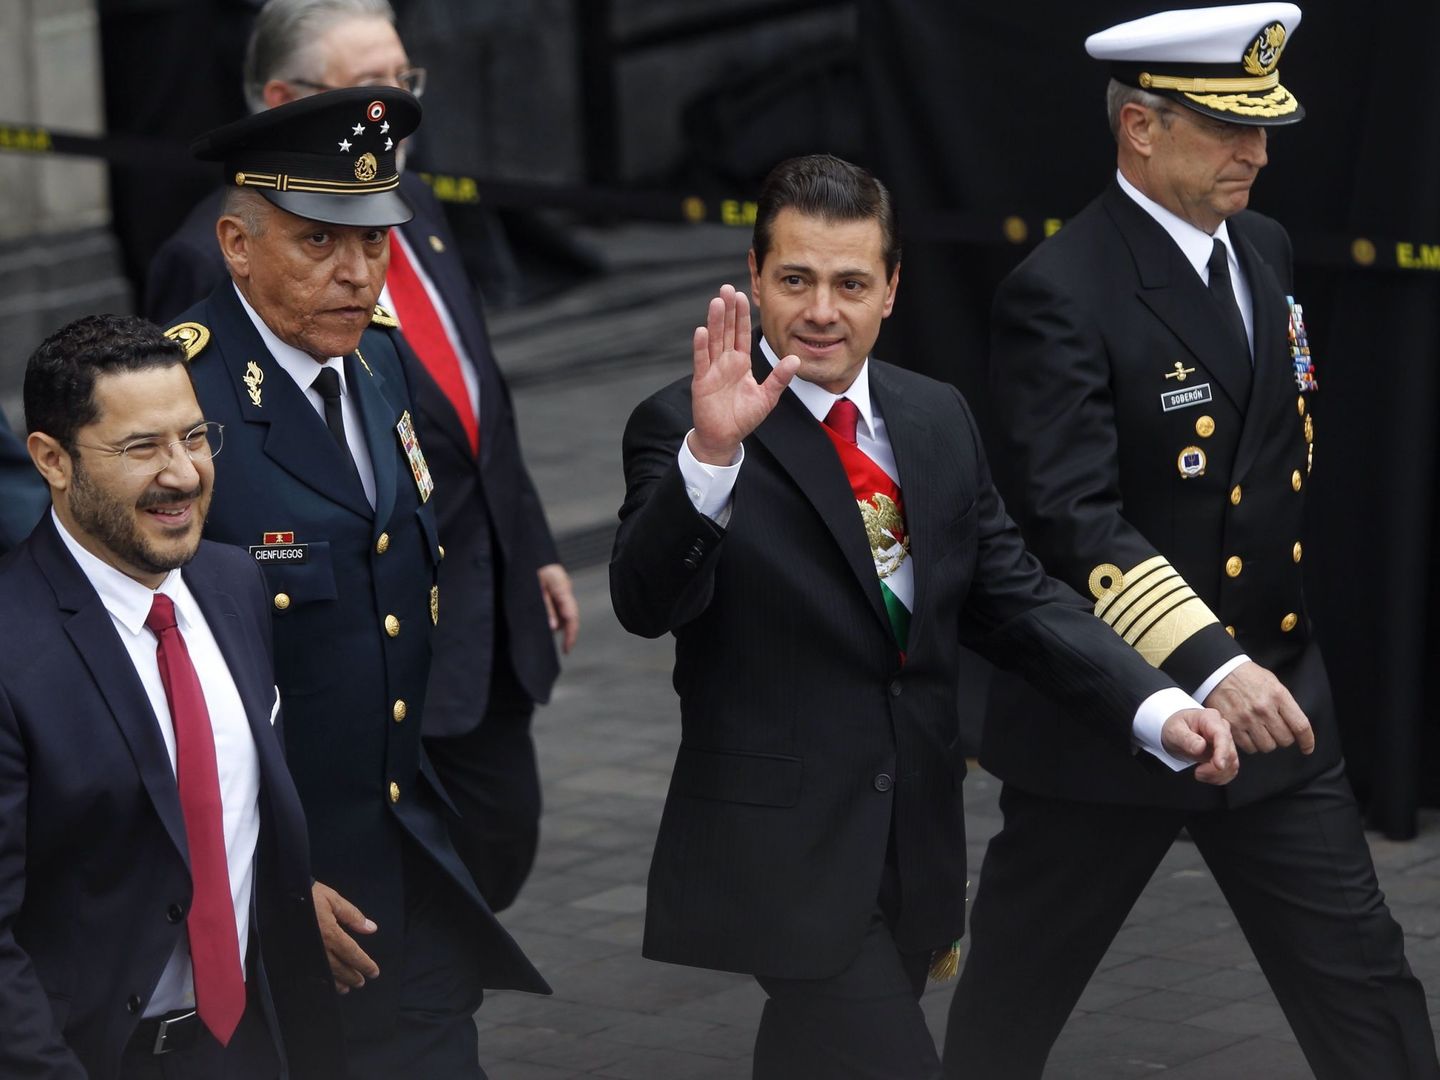 El presidente mexicano, Enrique Peña Nieto